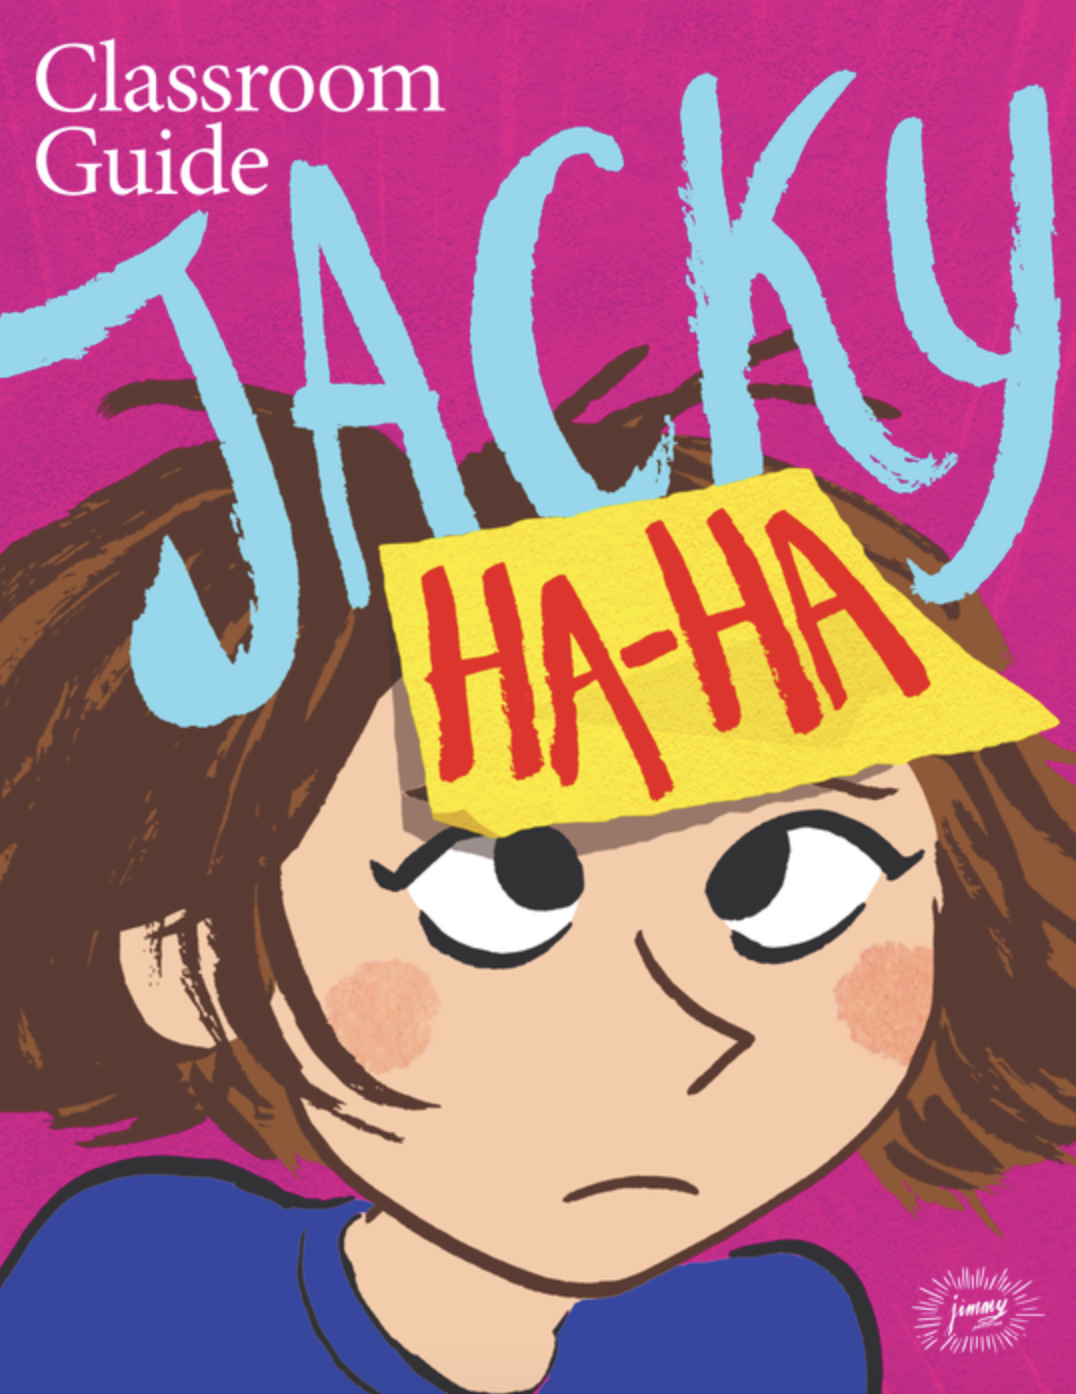 Jacky haha classroom guide